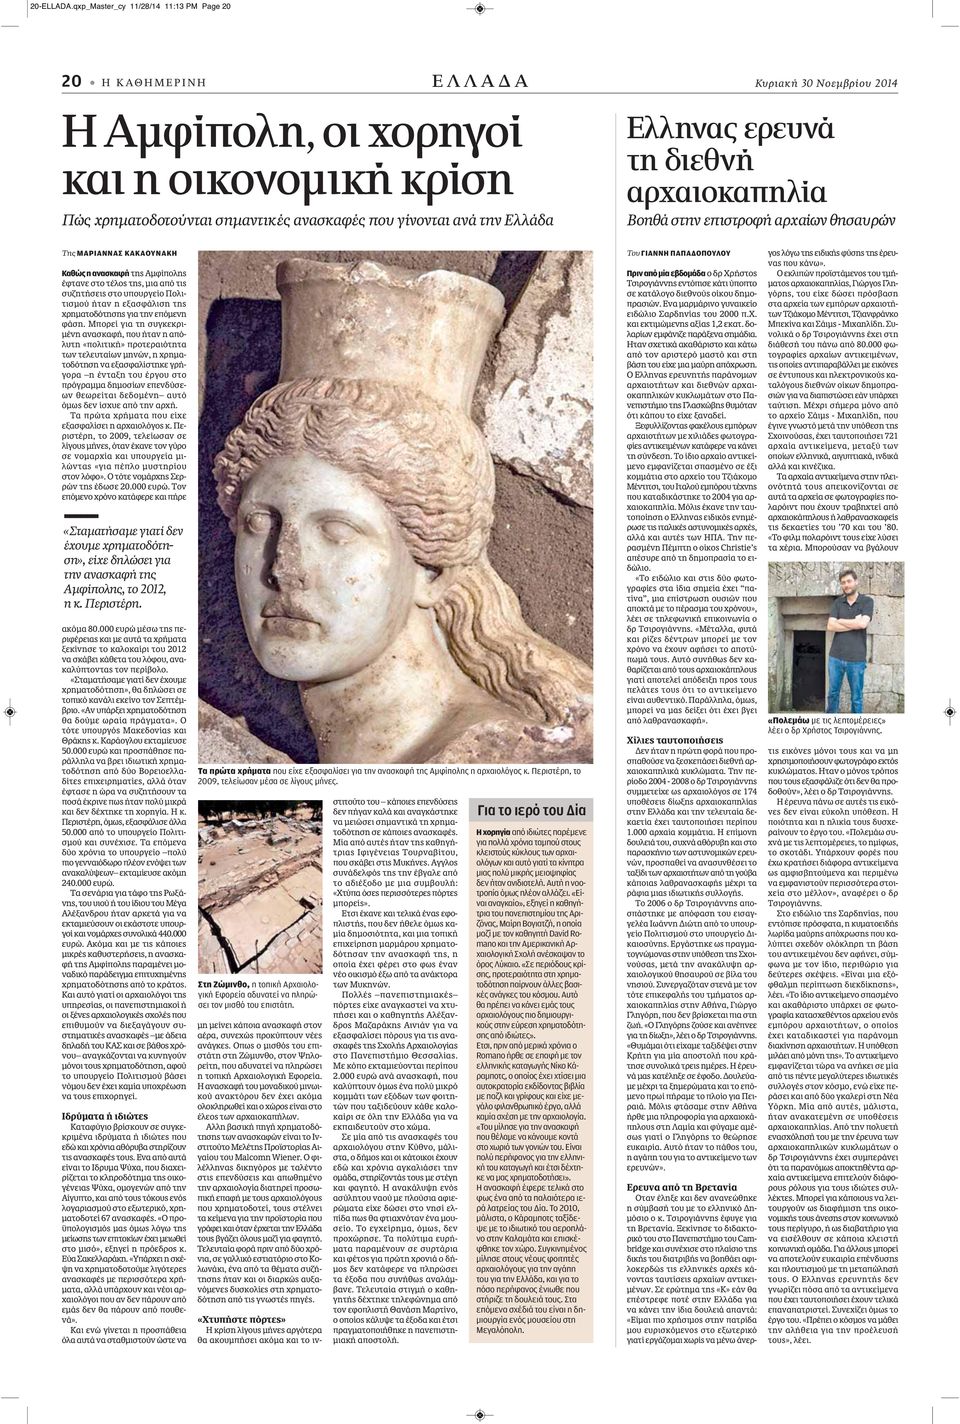 Ελλάδα Ελληνας ερευνά τη διεθνή αρχαιοκαπηλία Βοηθά στην επιστροφή αρχαίων θησαυρών Της ΜΑΡΙΑΝΝΑΣ ΚΑΚΑΟΥΝΑΚΗ Καθώς η ανασκαφή της Αμφίπολης έφτανε στο τέλος της, μια από τις συζητήσεις στο υπουργείο